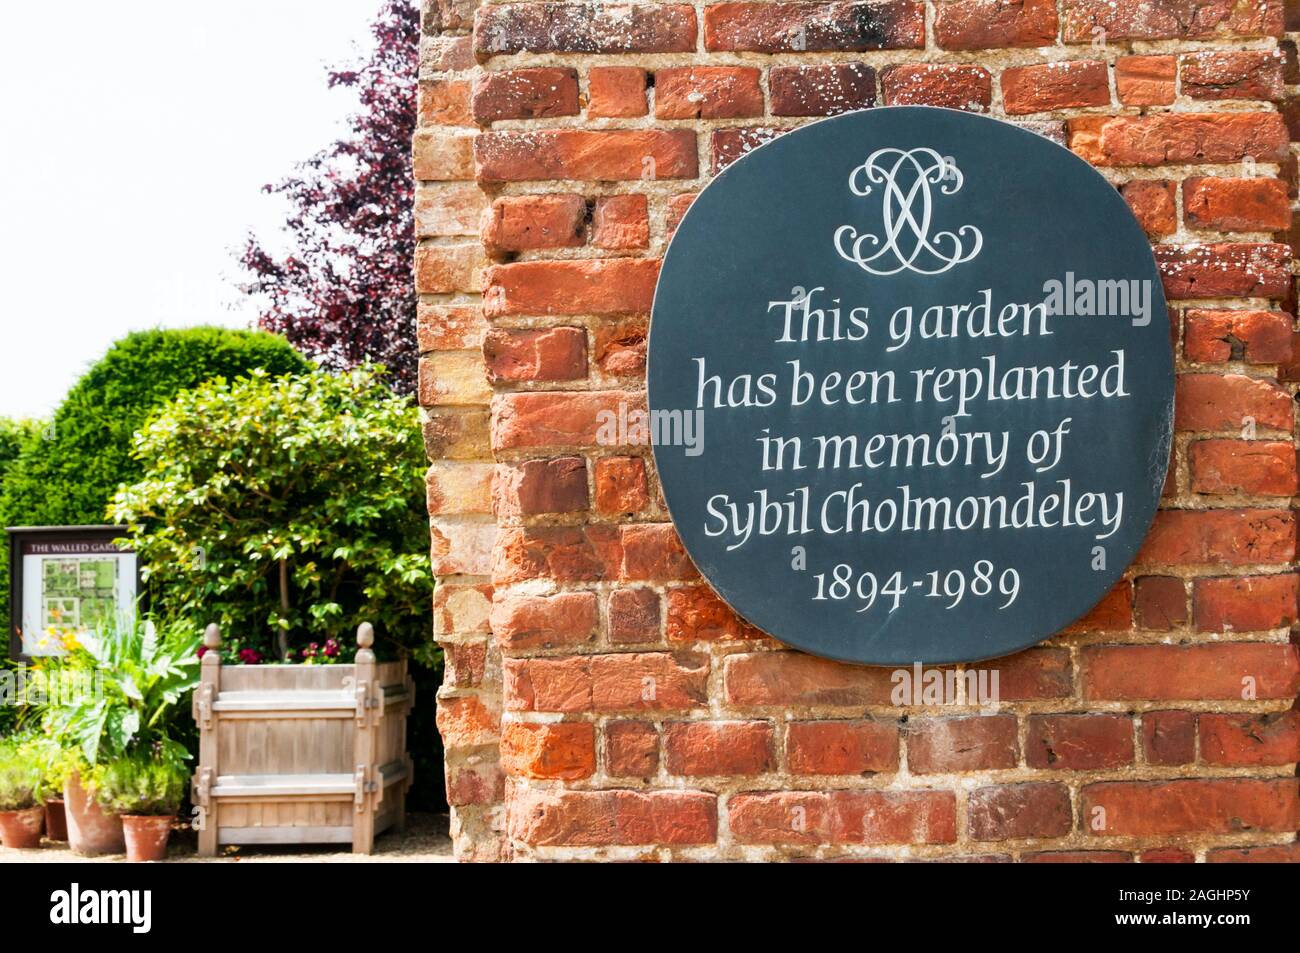 Une plaque à Houghton Hall décrit un jardin replanté en mémoire de Sybil Cholmondeley. Banque D'Images